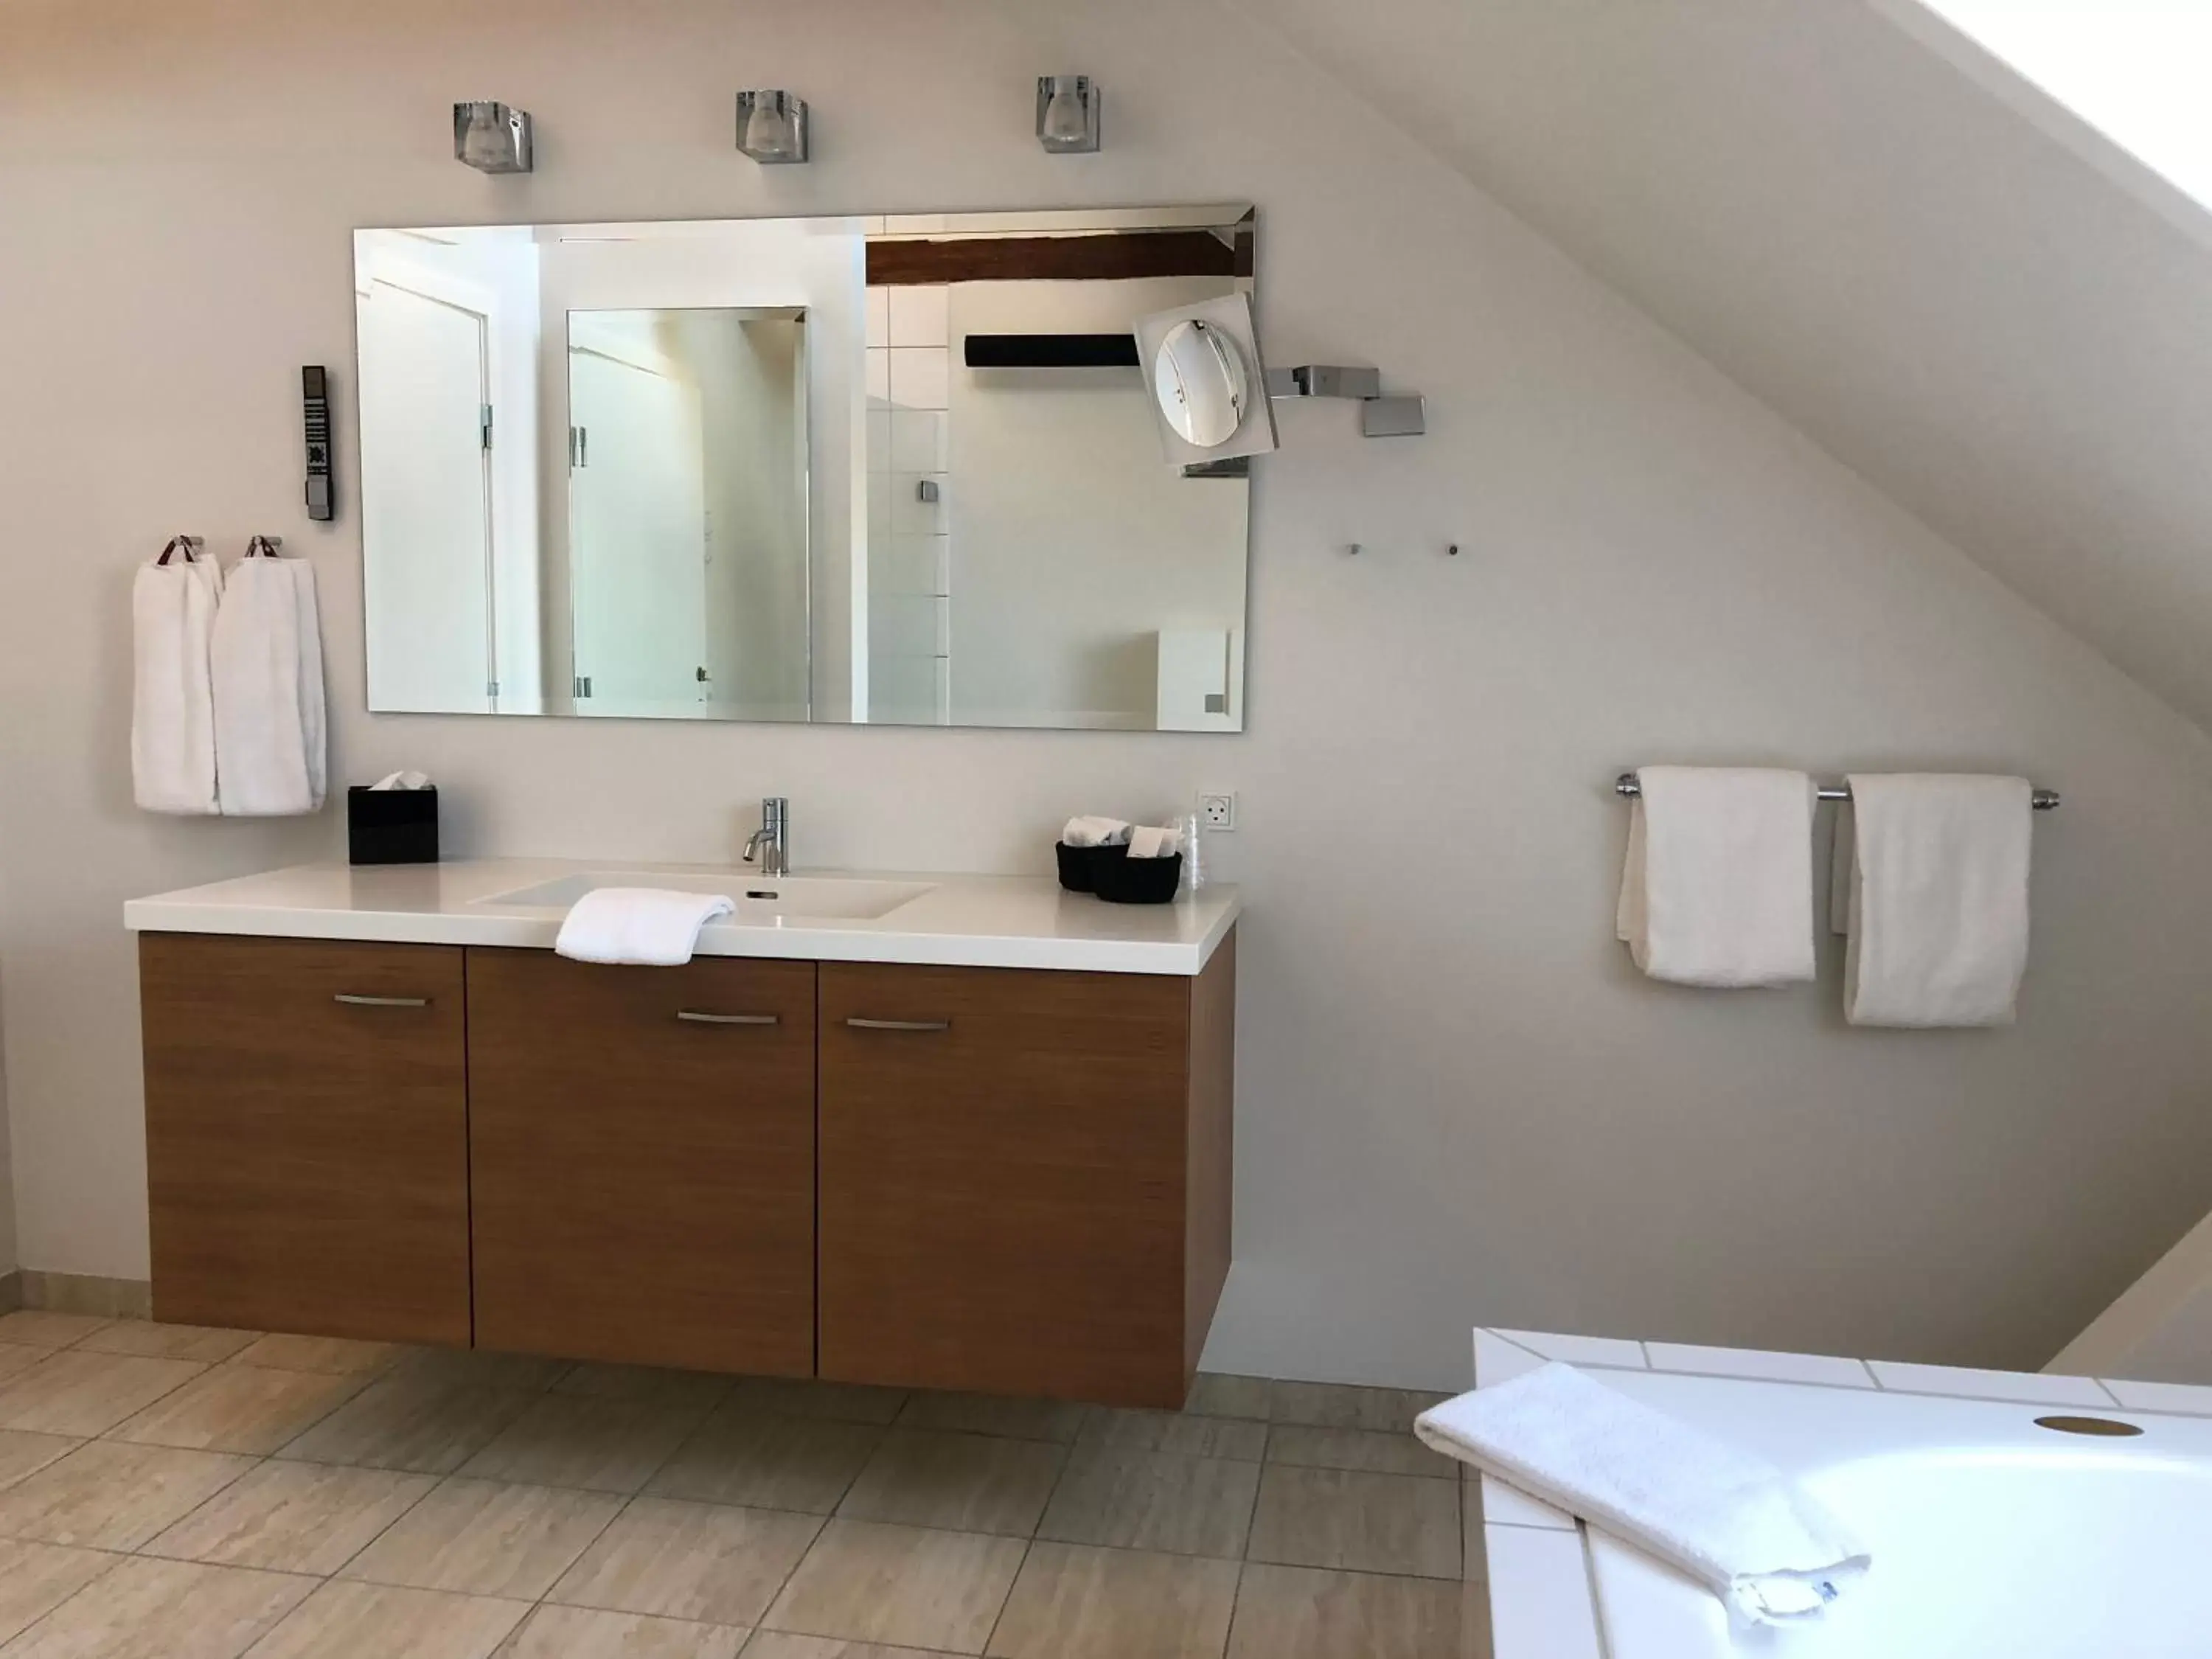 Bathroom in Best Western Plus Hotel Eyde